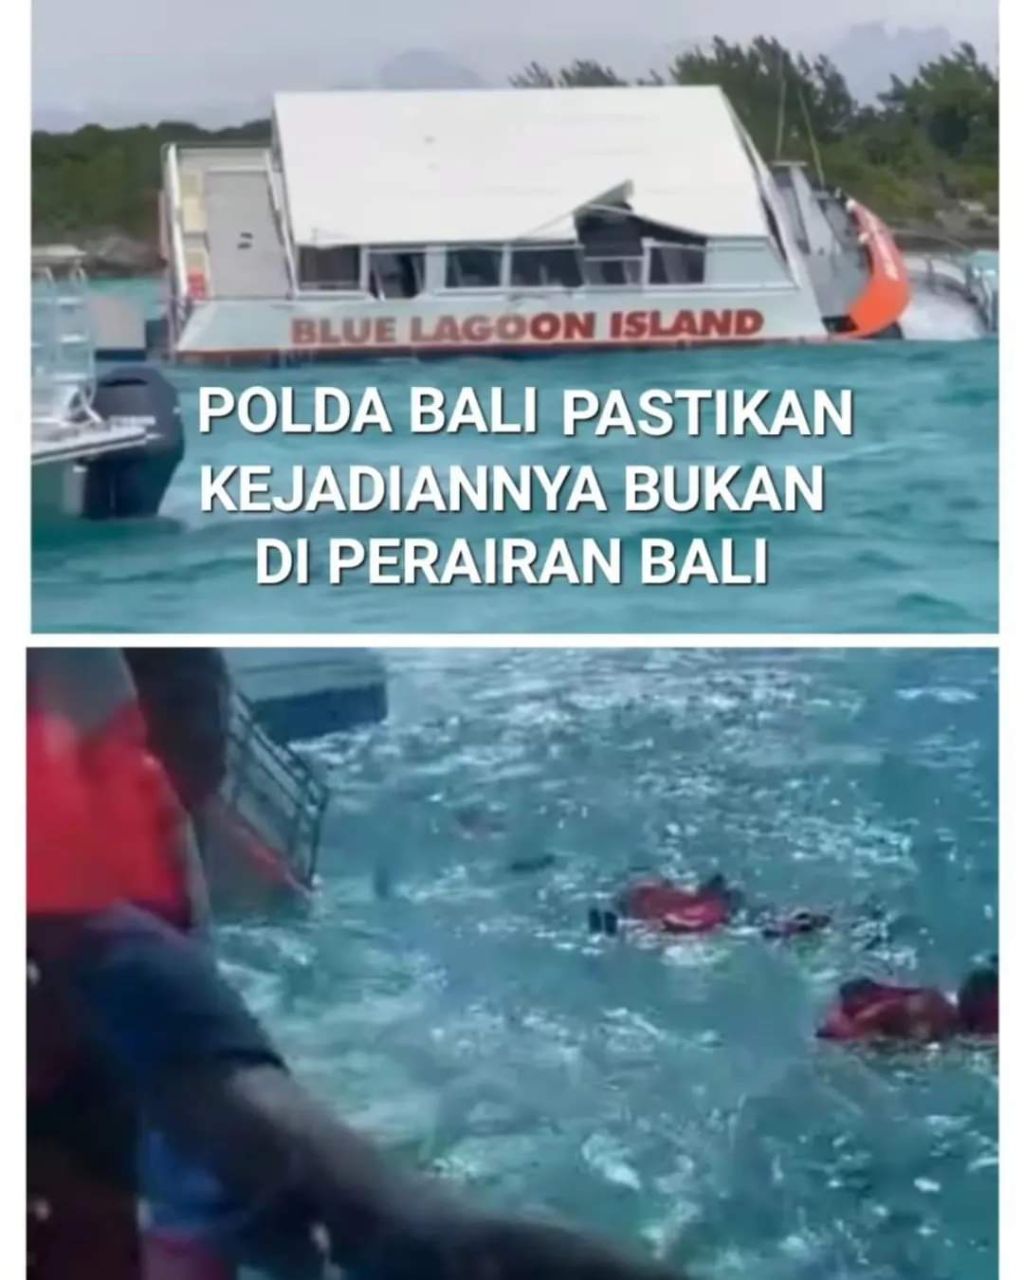 Vidio Viral Kecelakaan "KAPAL BLUE LAGOON" Dipastikan Tidak Terjadi Di Wilkum Polda Bali.